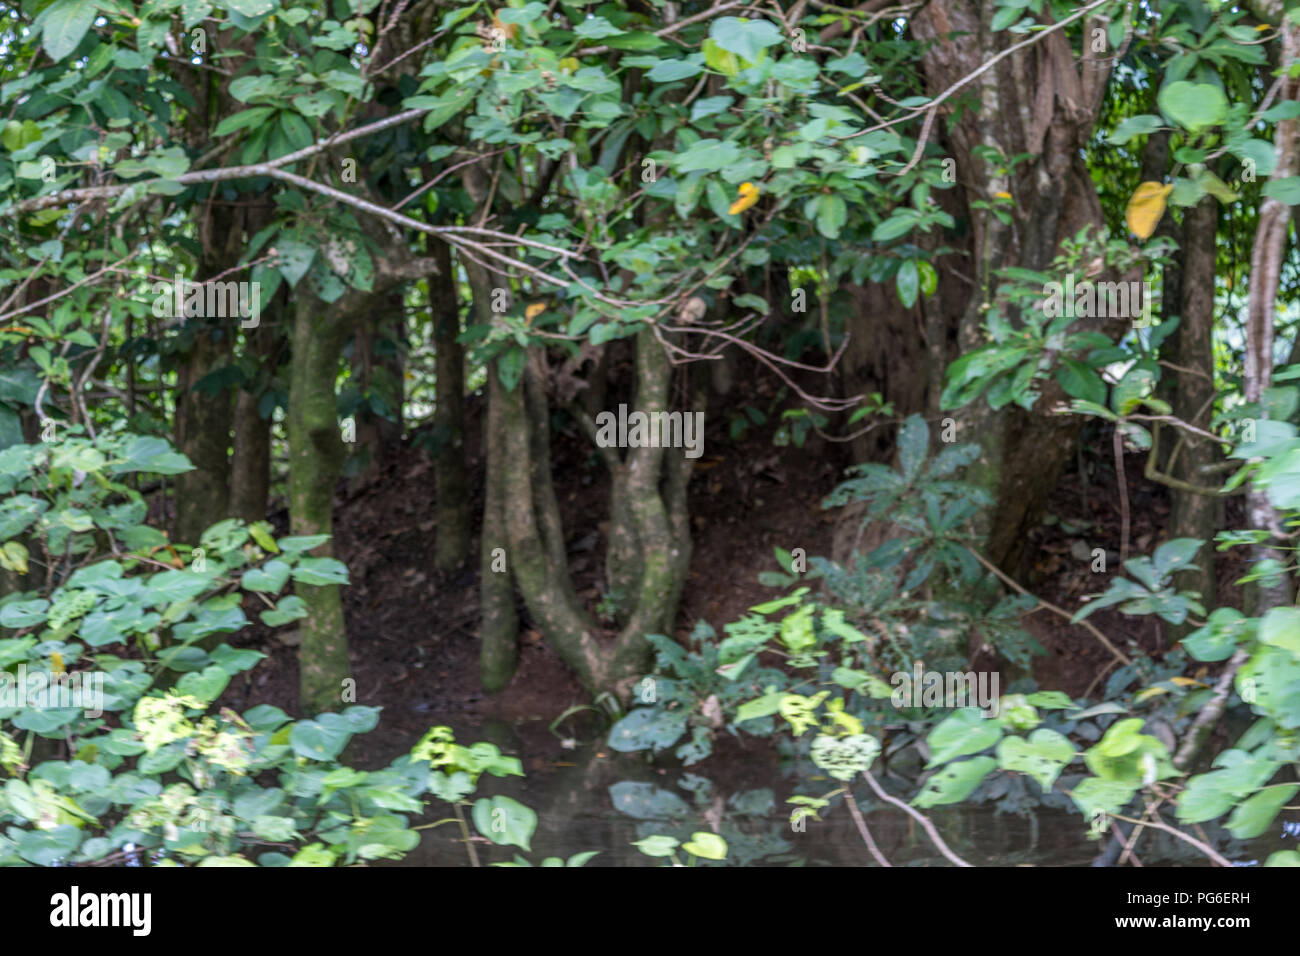 Vögel nisten in Bäumen im tropischen Regenwald Stockfoto